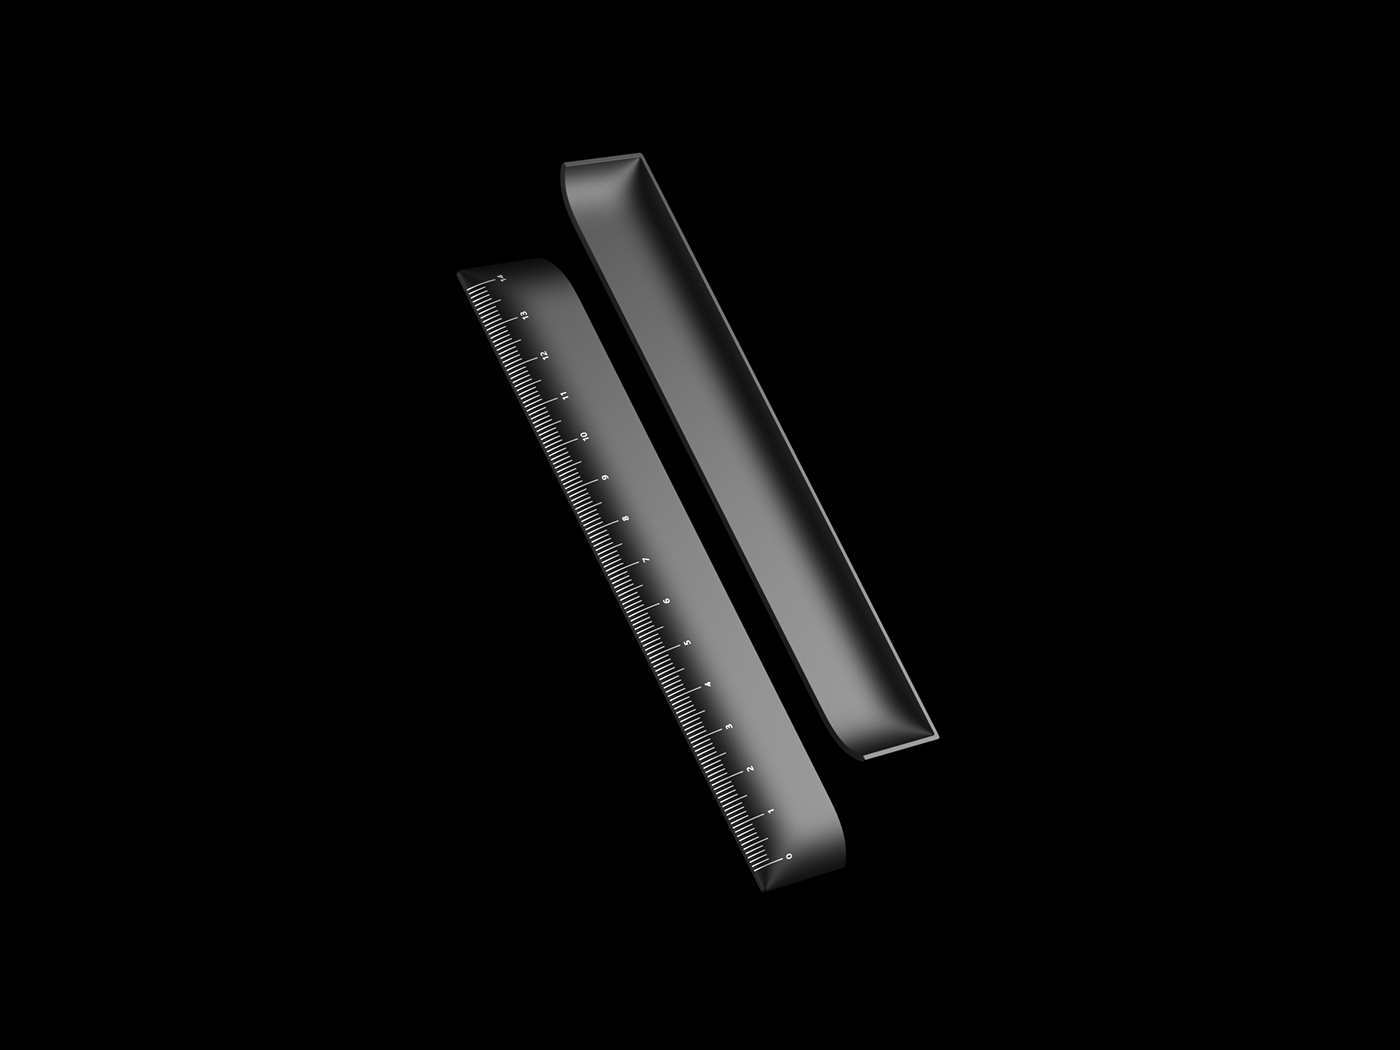 Anodized aluminum black industrial design  Packaging packaging design product design  ruler Stationery